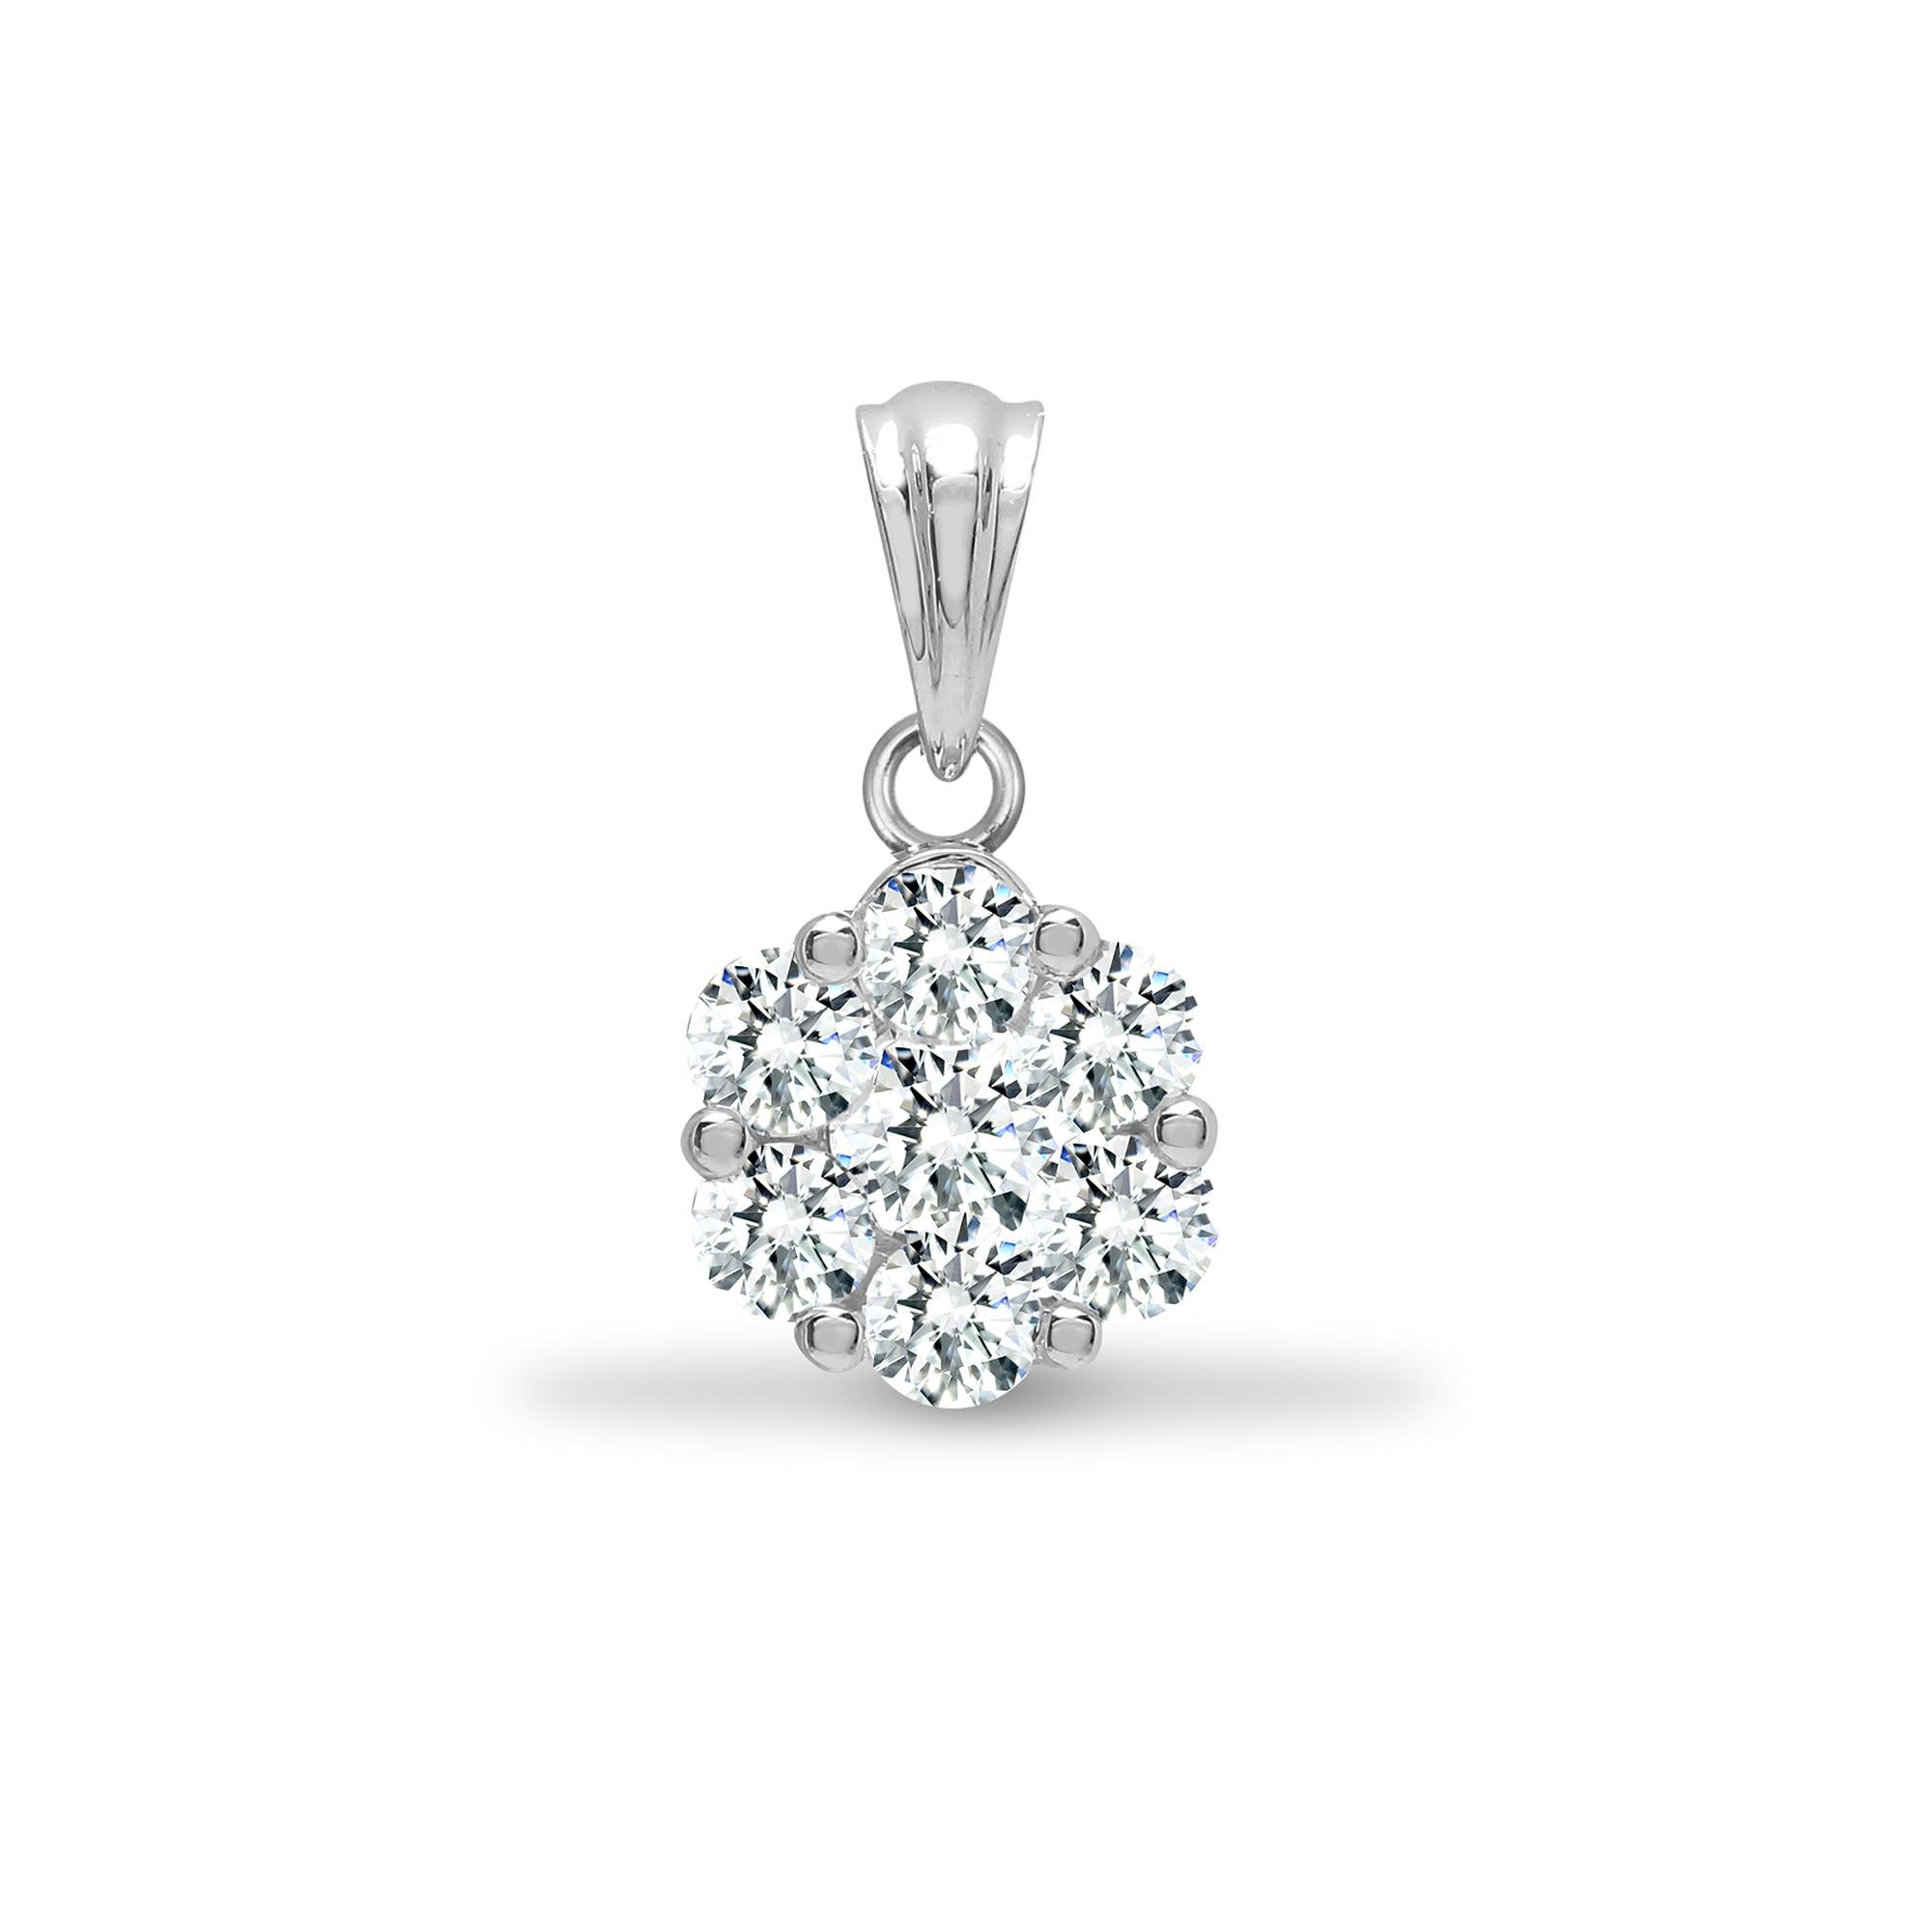 Ce magnifique pendentif en forme de fleur de 0,50 carat est composé de 7 diamants ronds de taille brillant de couleur G/H et de pureté SI1. Ce collier est accompagné d'une superbe chaîne en or blanc 18 carats. Il convient à toutes les occasions et